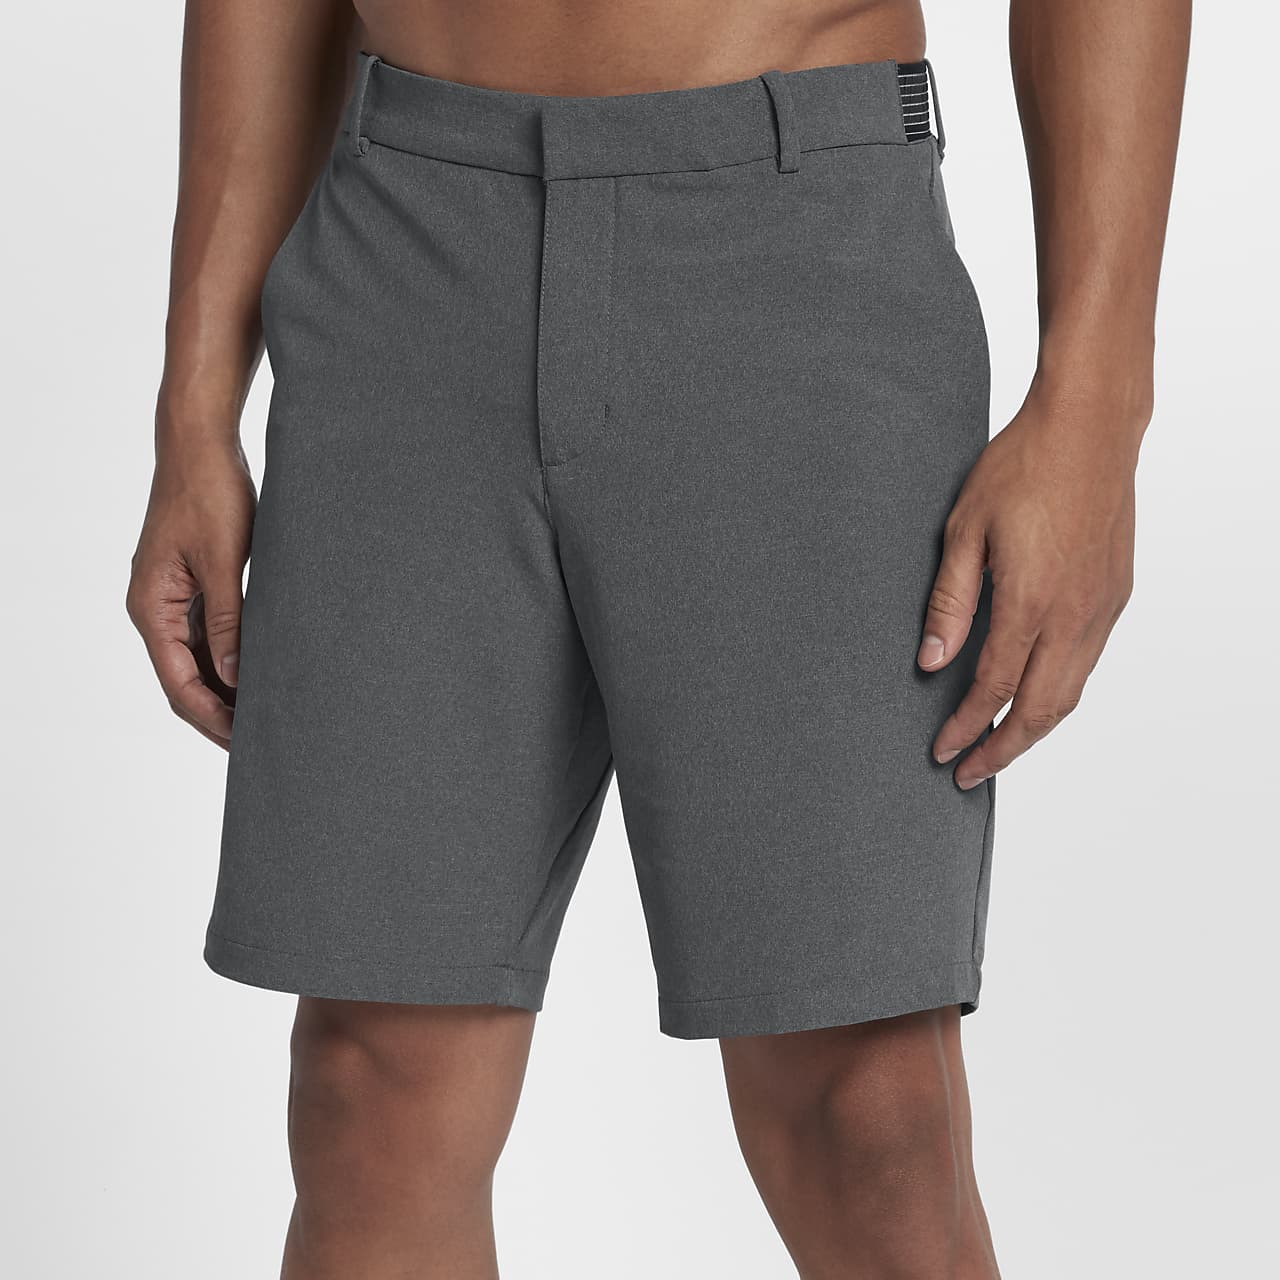 Best Slim Fit Gym Shorts For Men